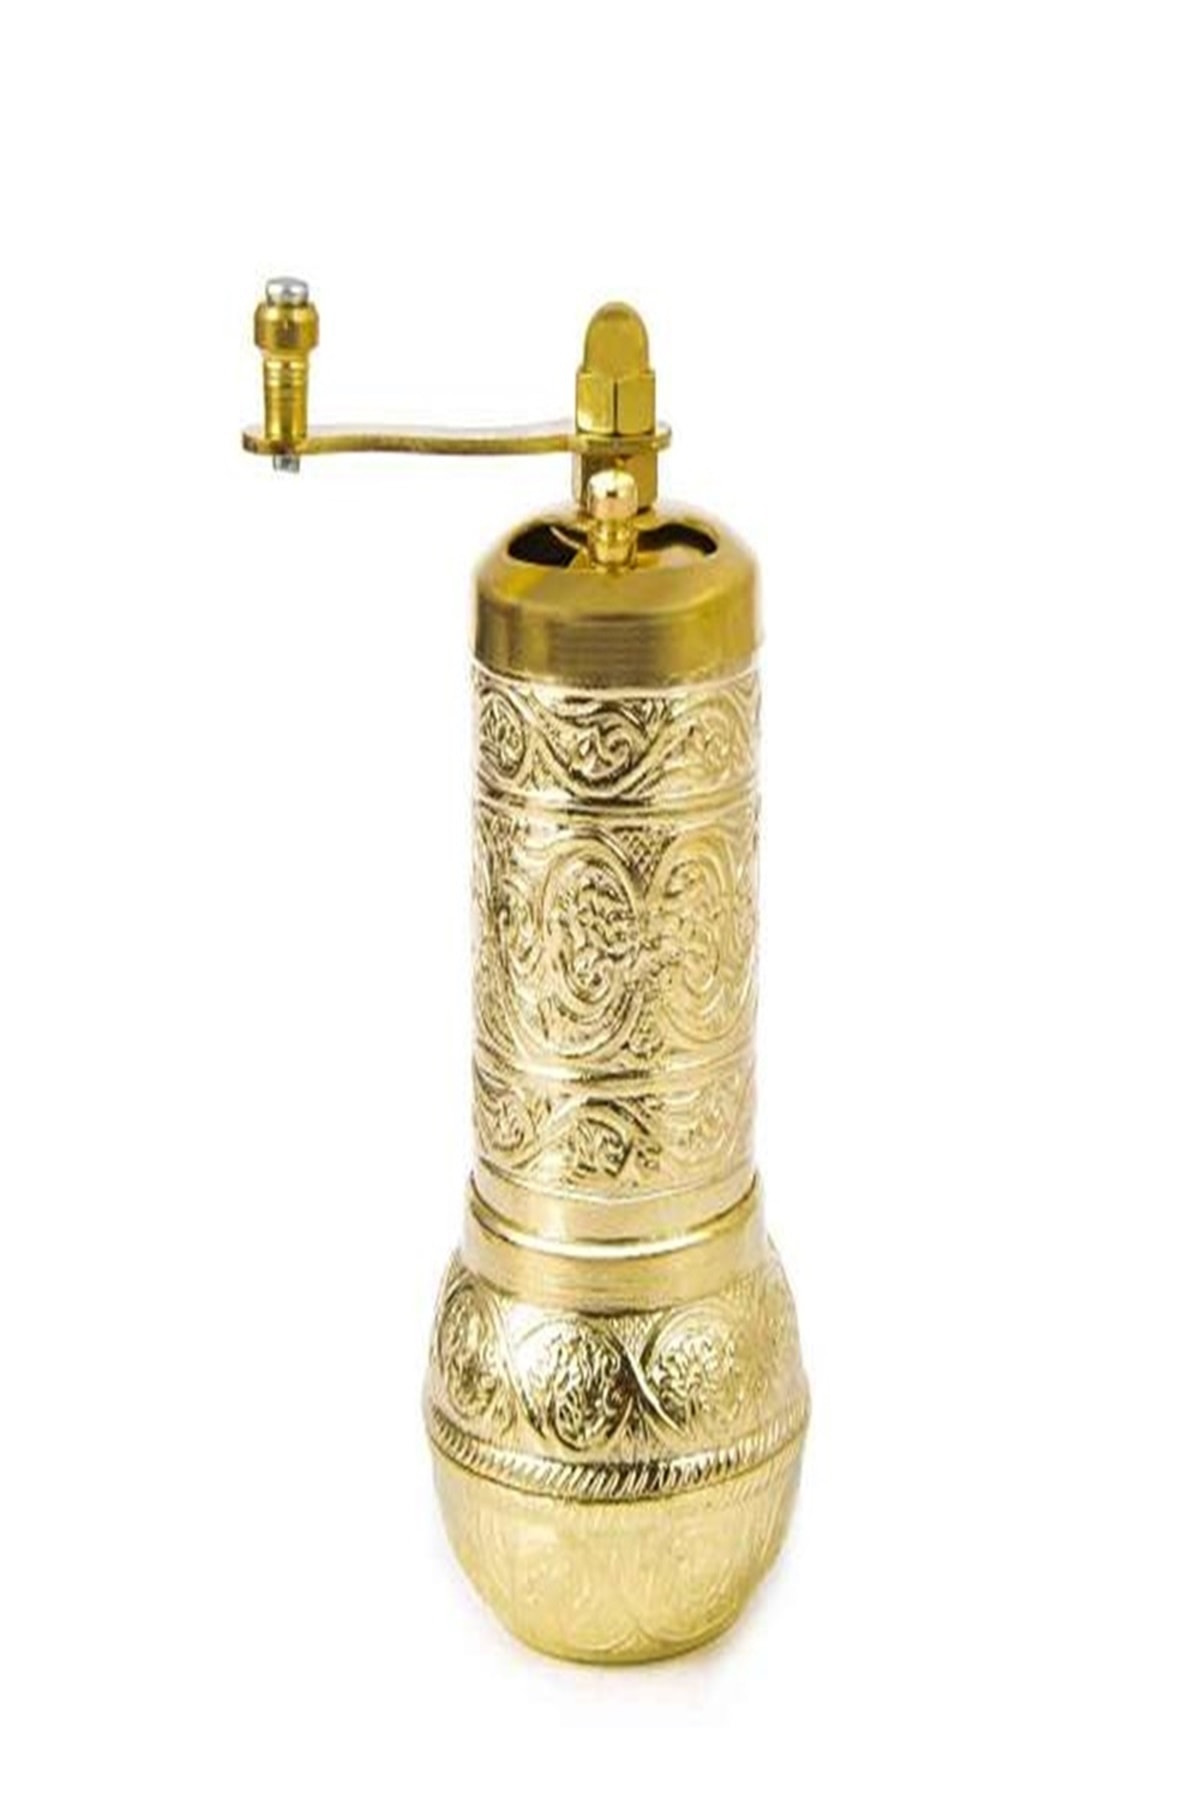 https://www.theottomanbazaar.com/spice-grinder-gold-color-spice-grinder-manual-574-36-K.jpg